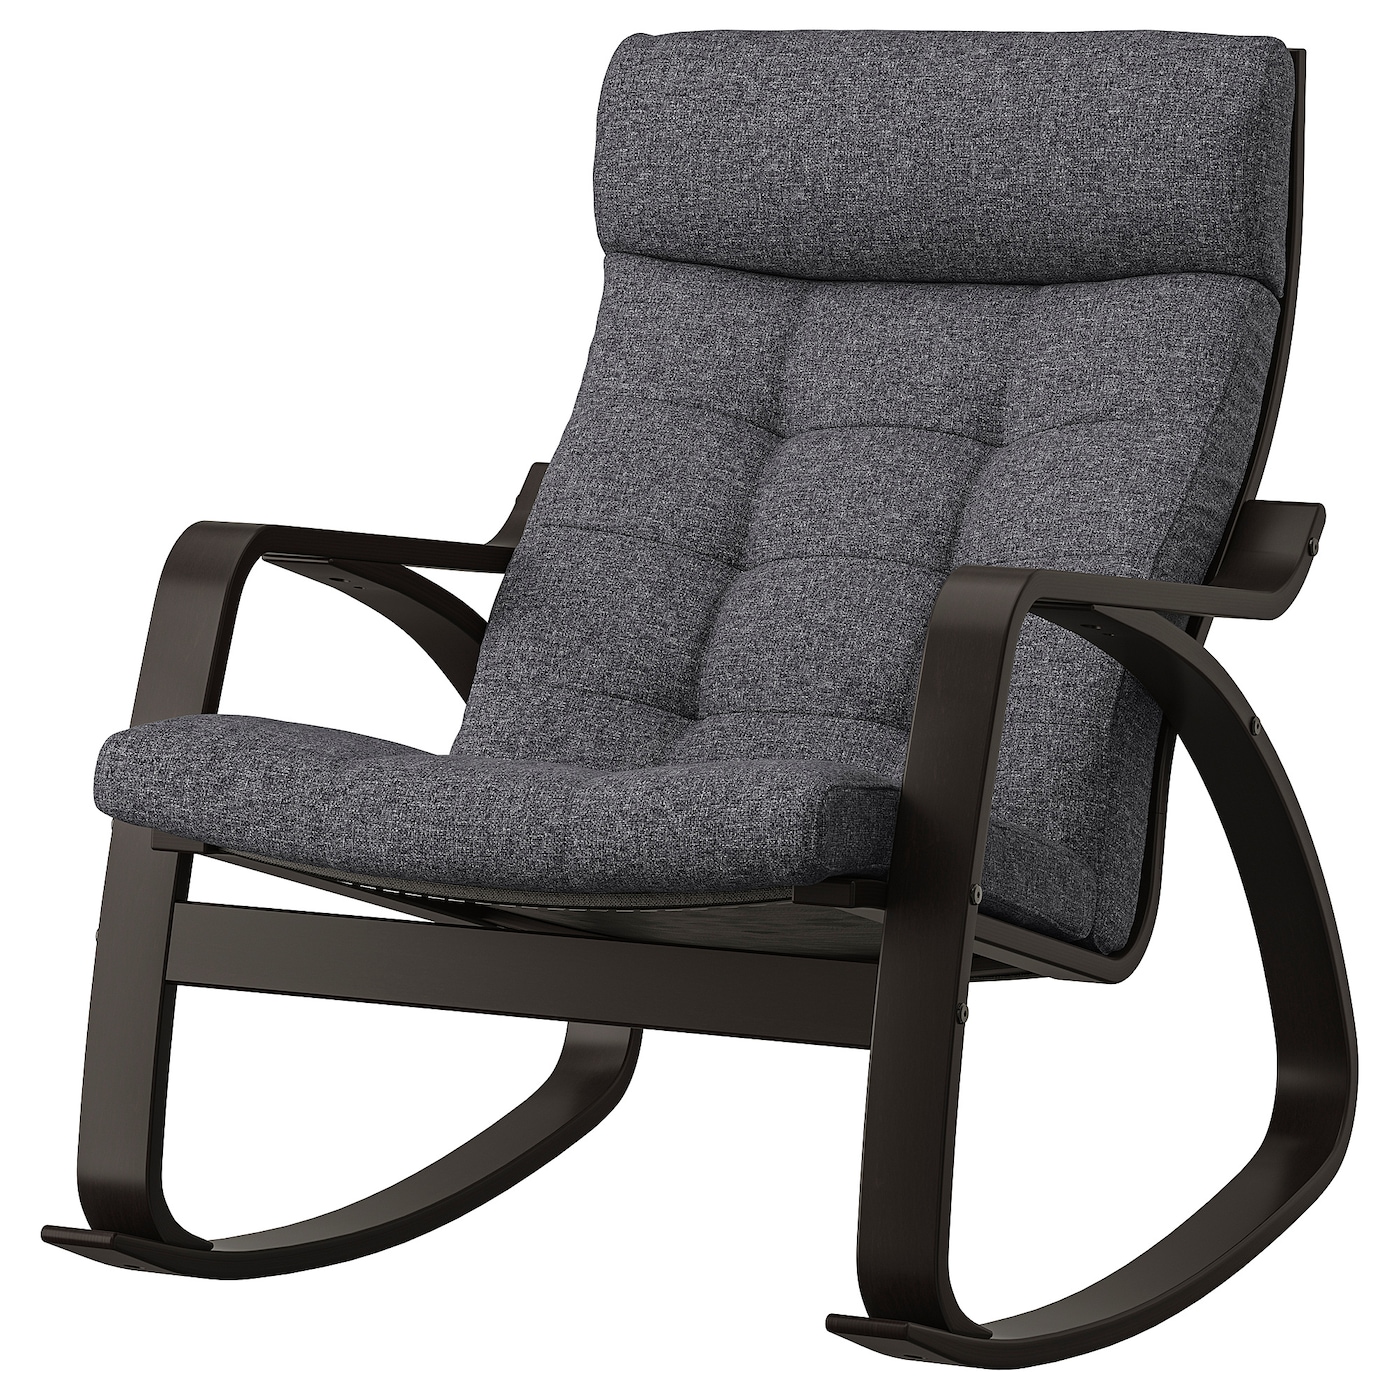 ПОЭНГ Кресло-качалка, черно-коричневый/Гуннаред темно-серый POÄNG IKEA детское электрическое кресло качалка удобное кресло качалка бесплатная установка